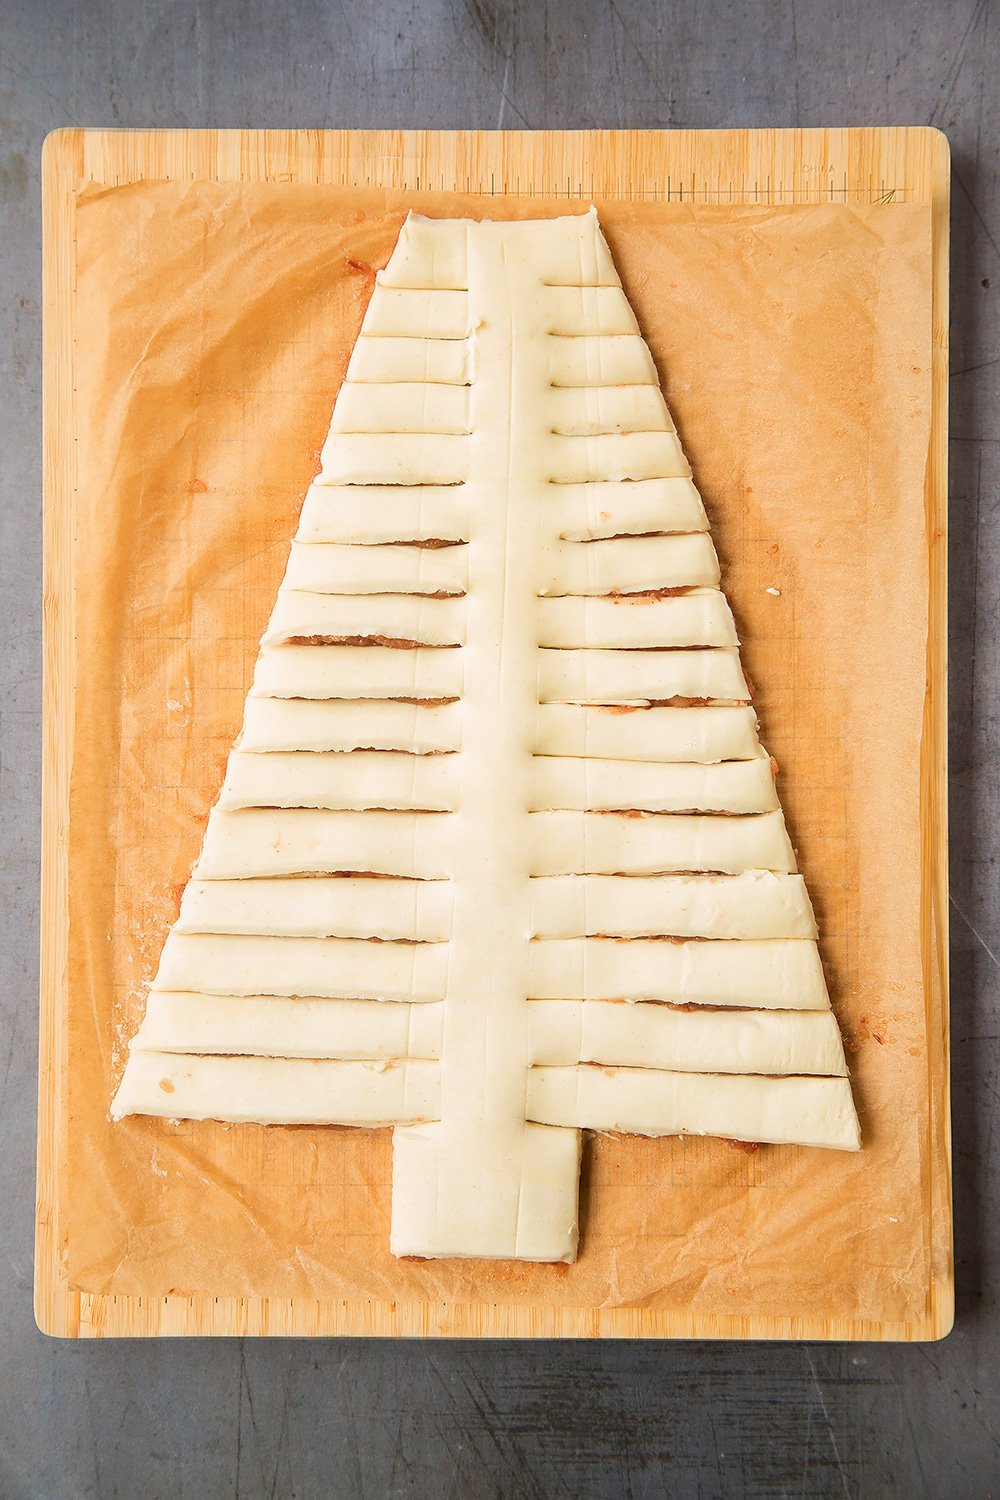 Slice to create a Christmas tree shape